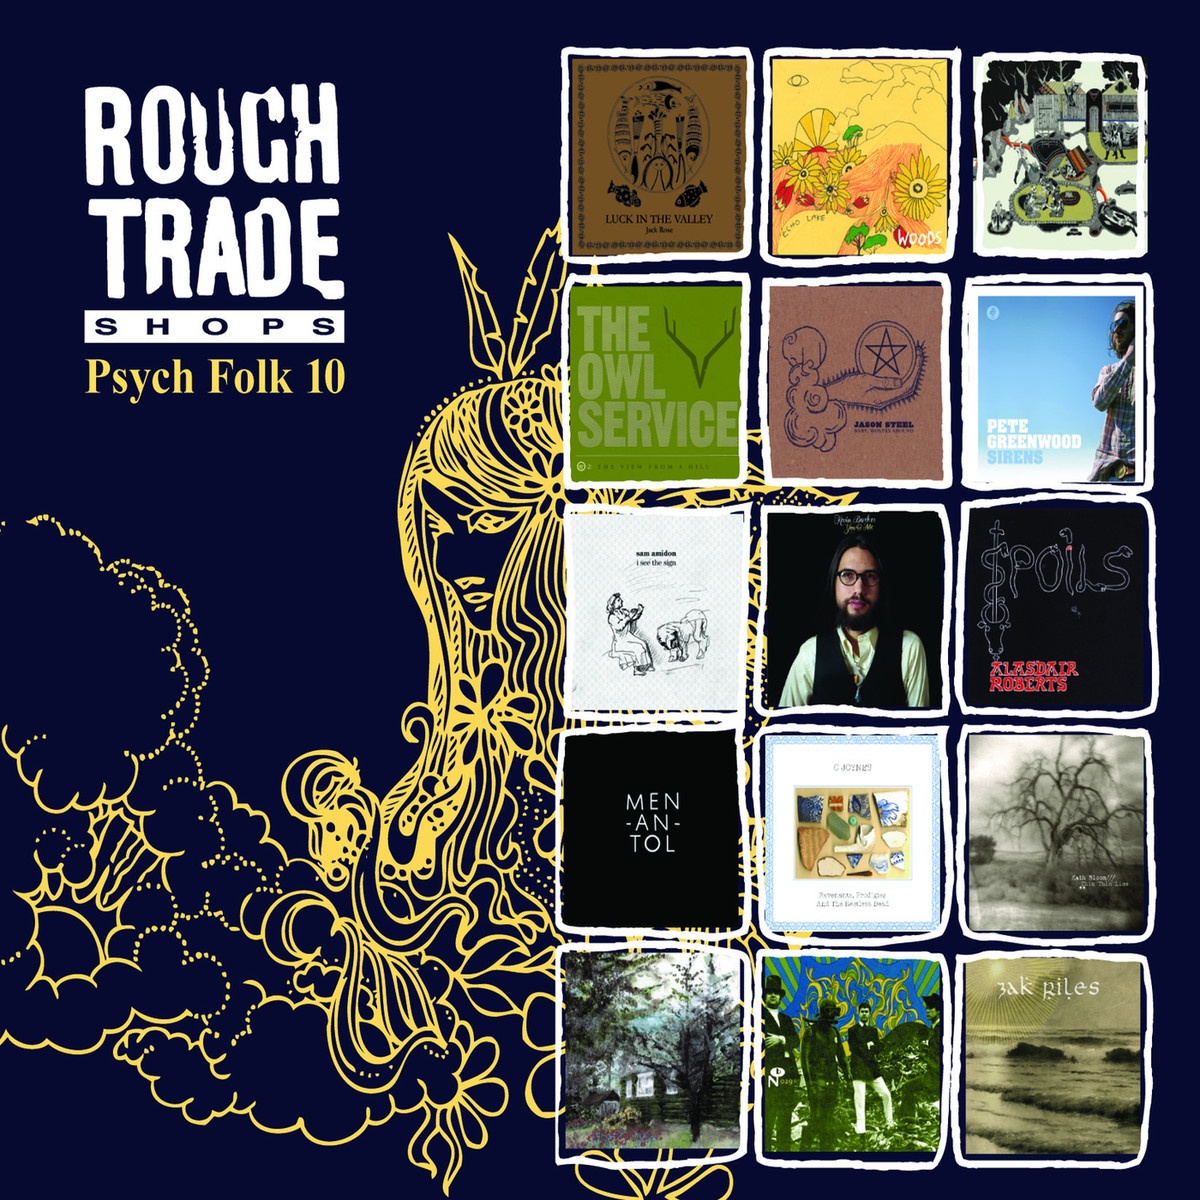 Rough Trade Shops Psych Folk 10